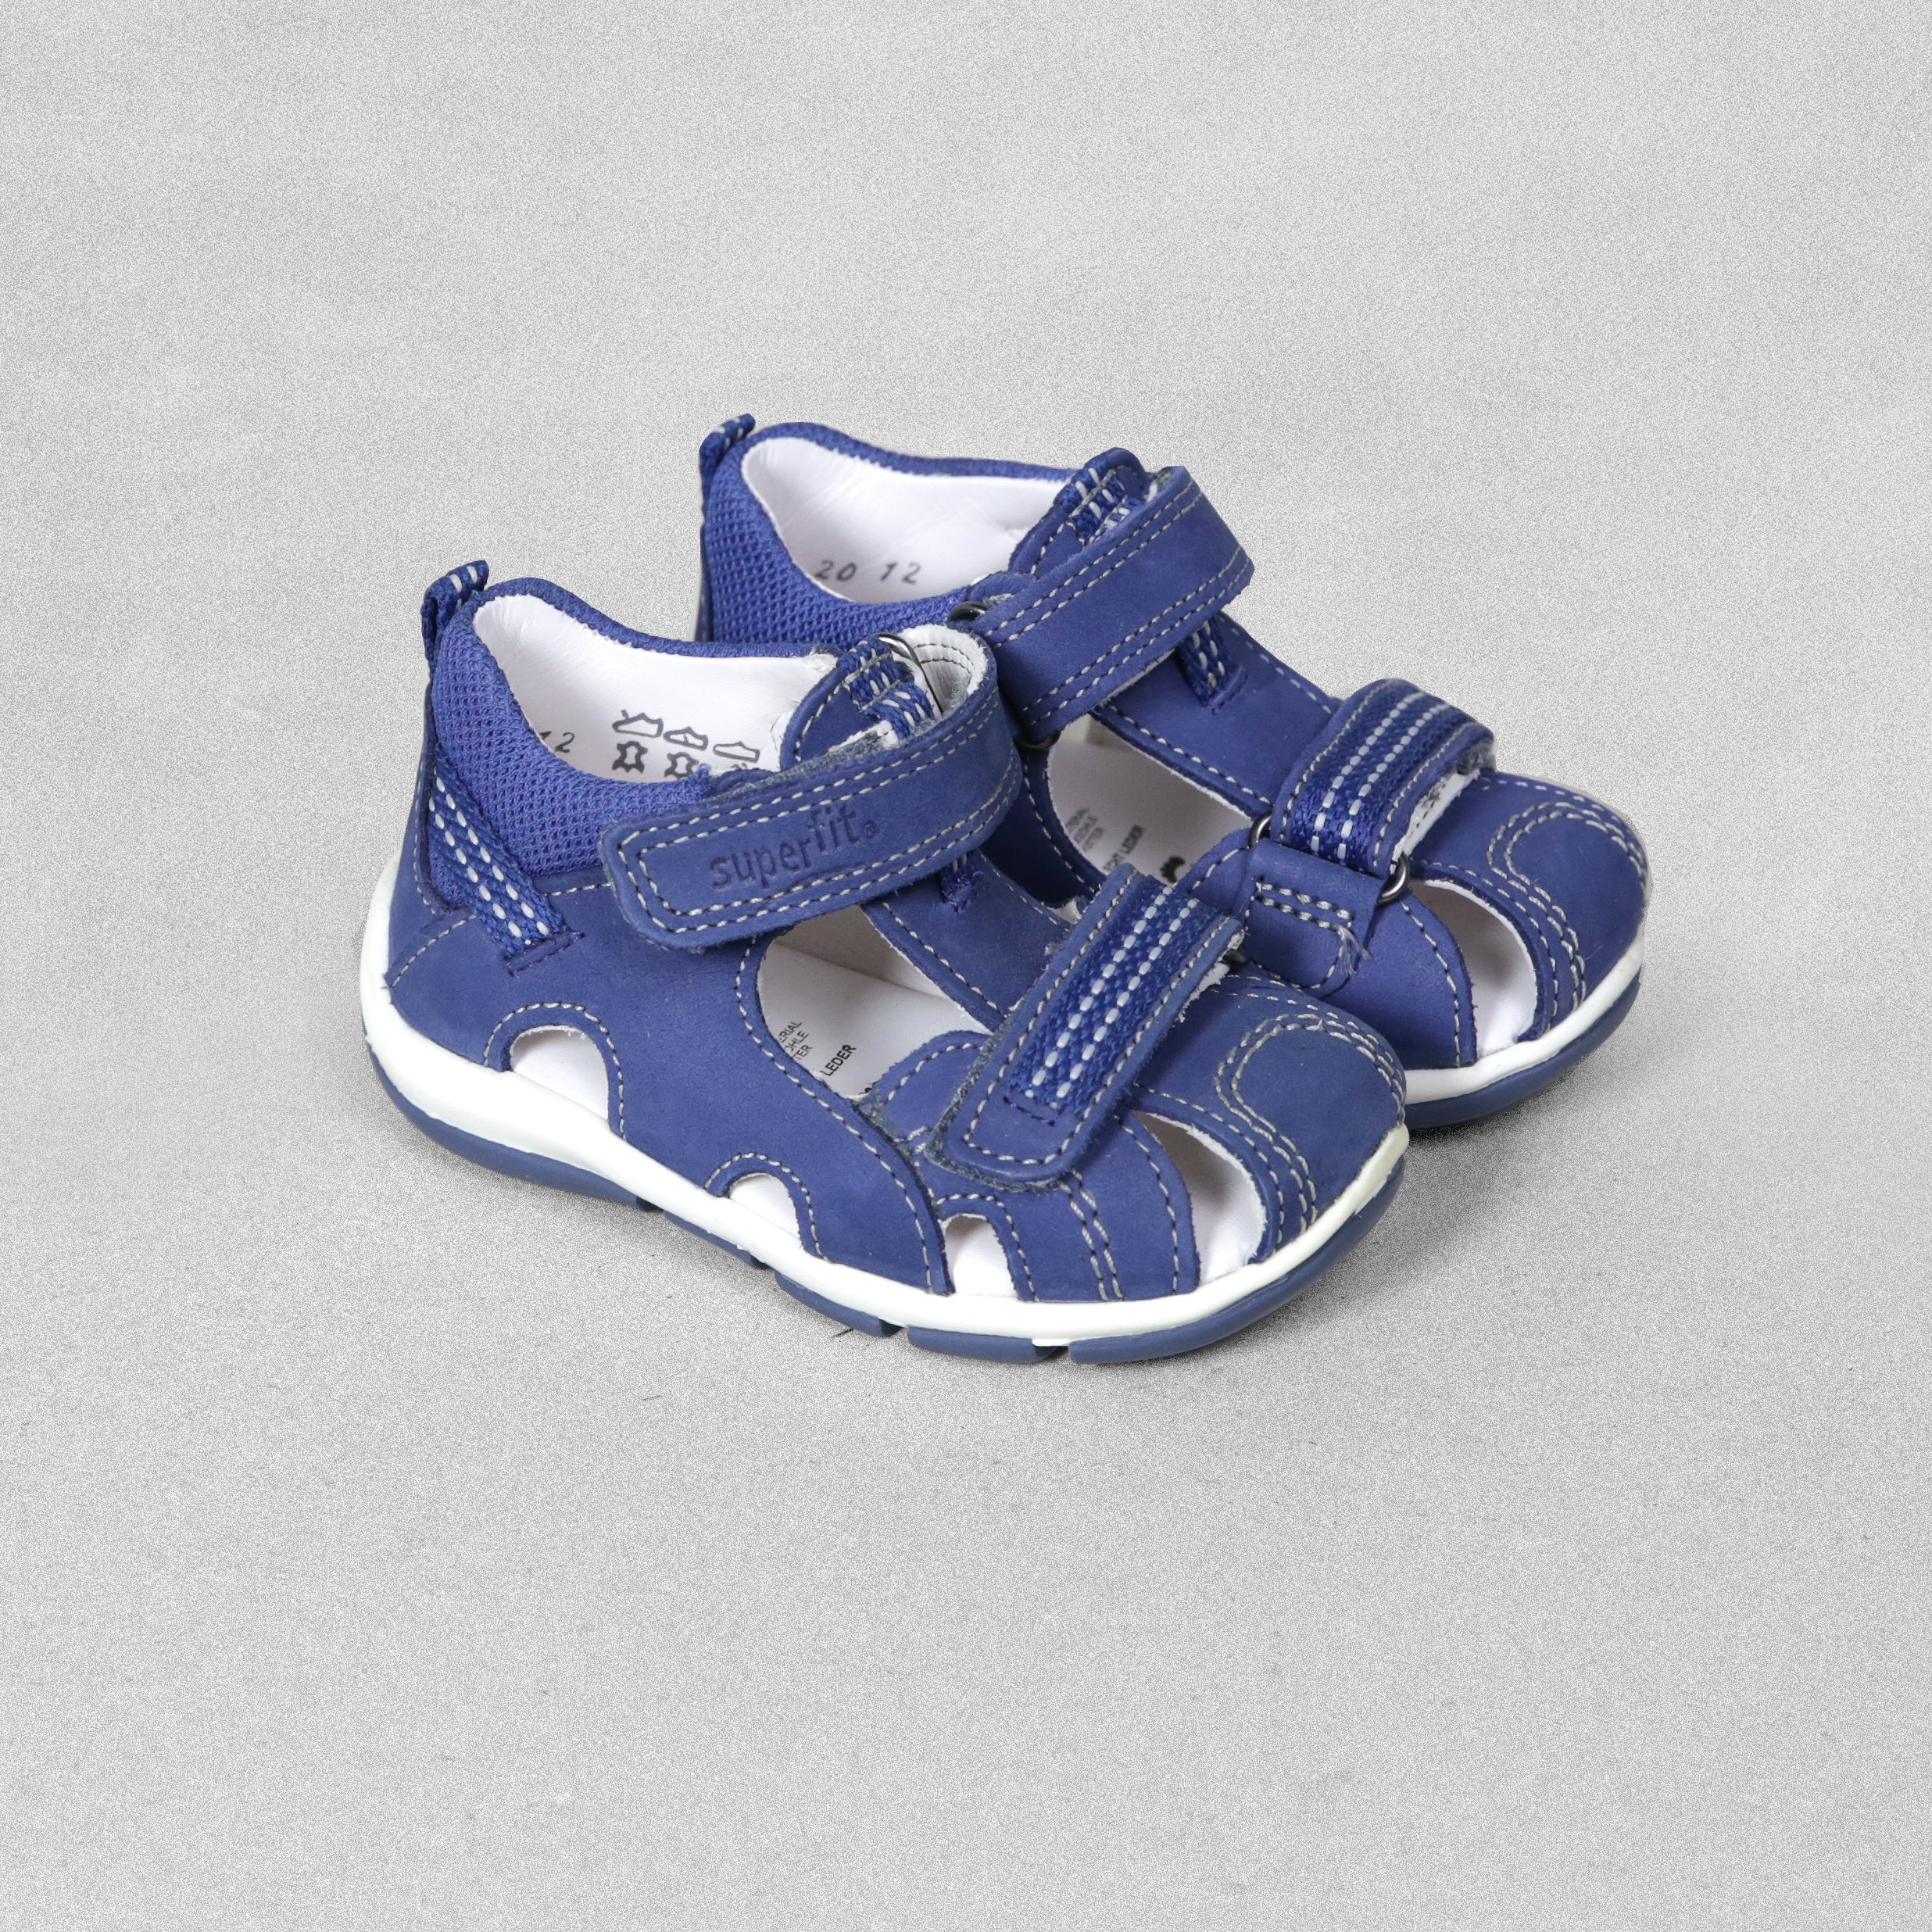 'Superfit' Blue Leather Sandals - UK Child Size 4 / EU 20